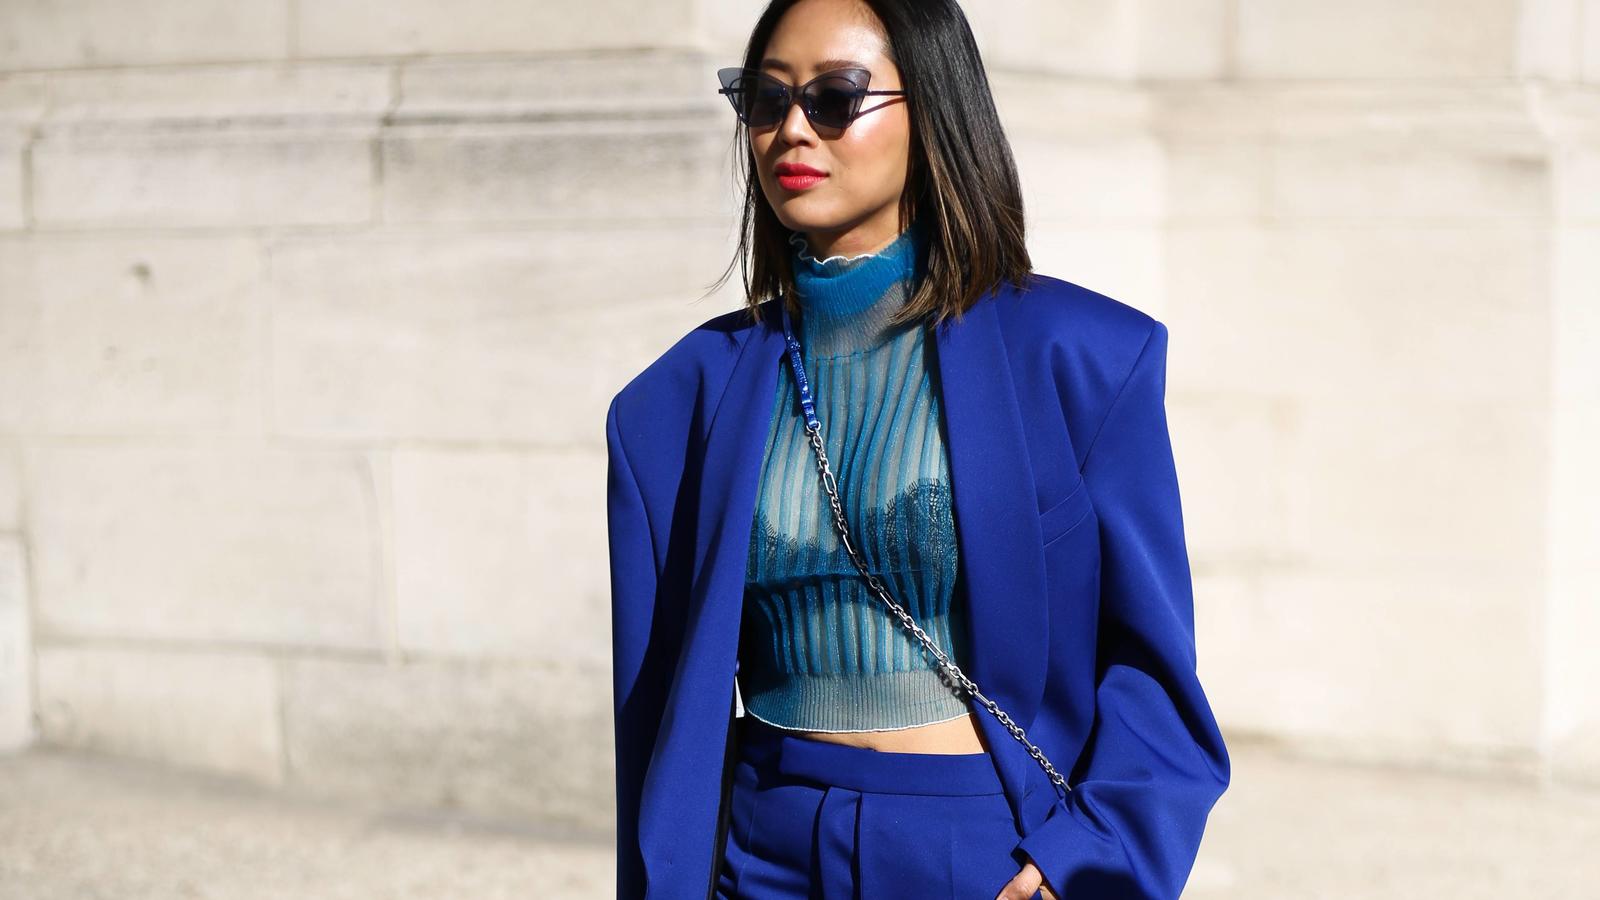  Bloggerin Aimee Song trägt einen Oversize-Blazer.